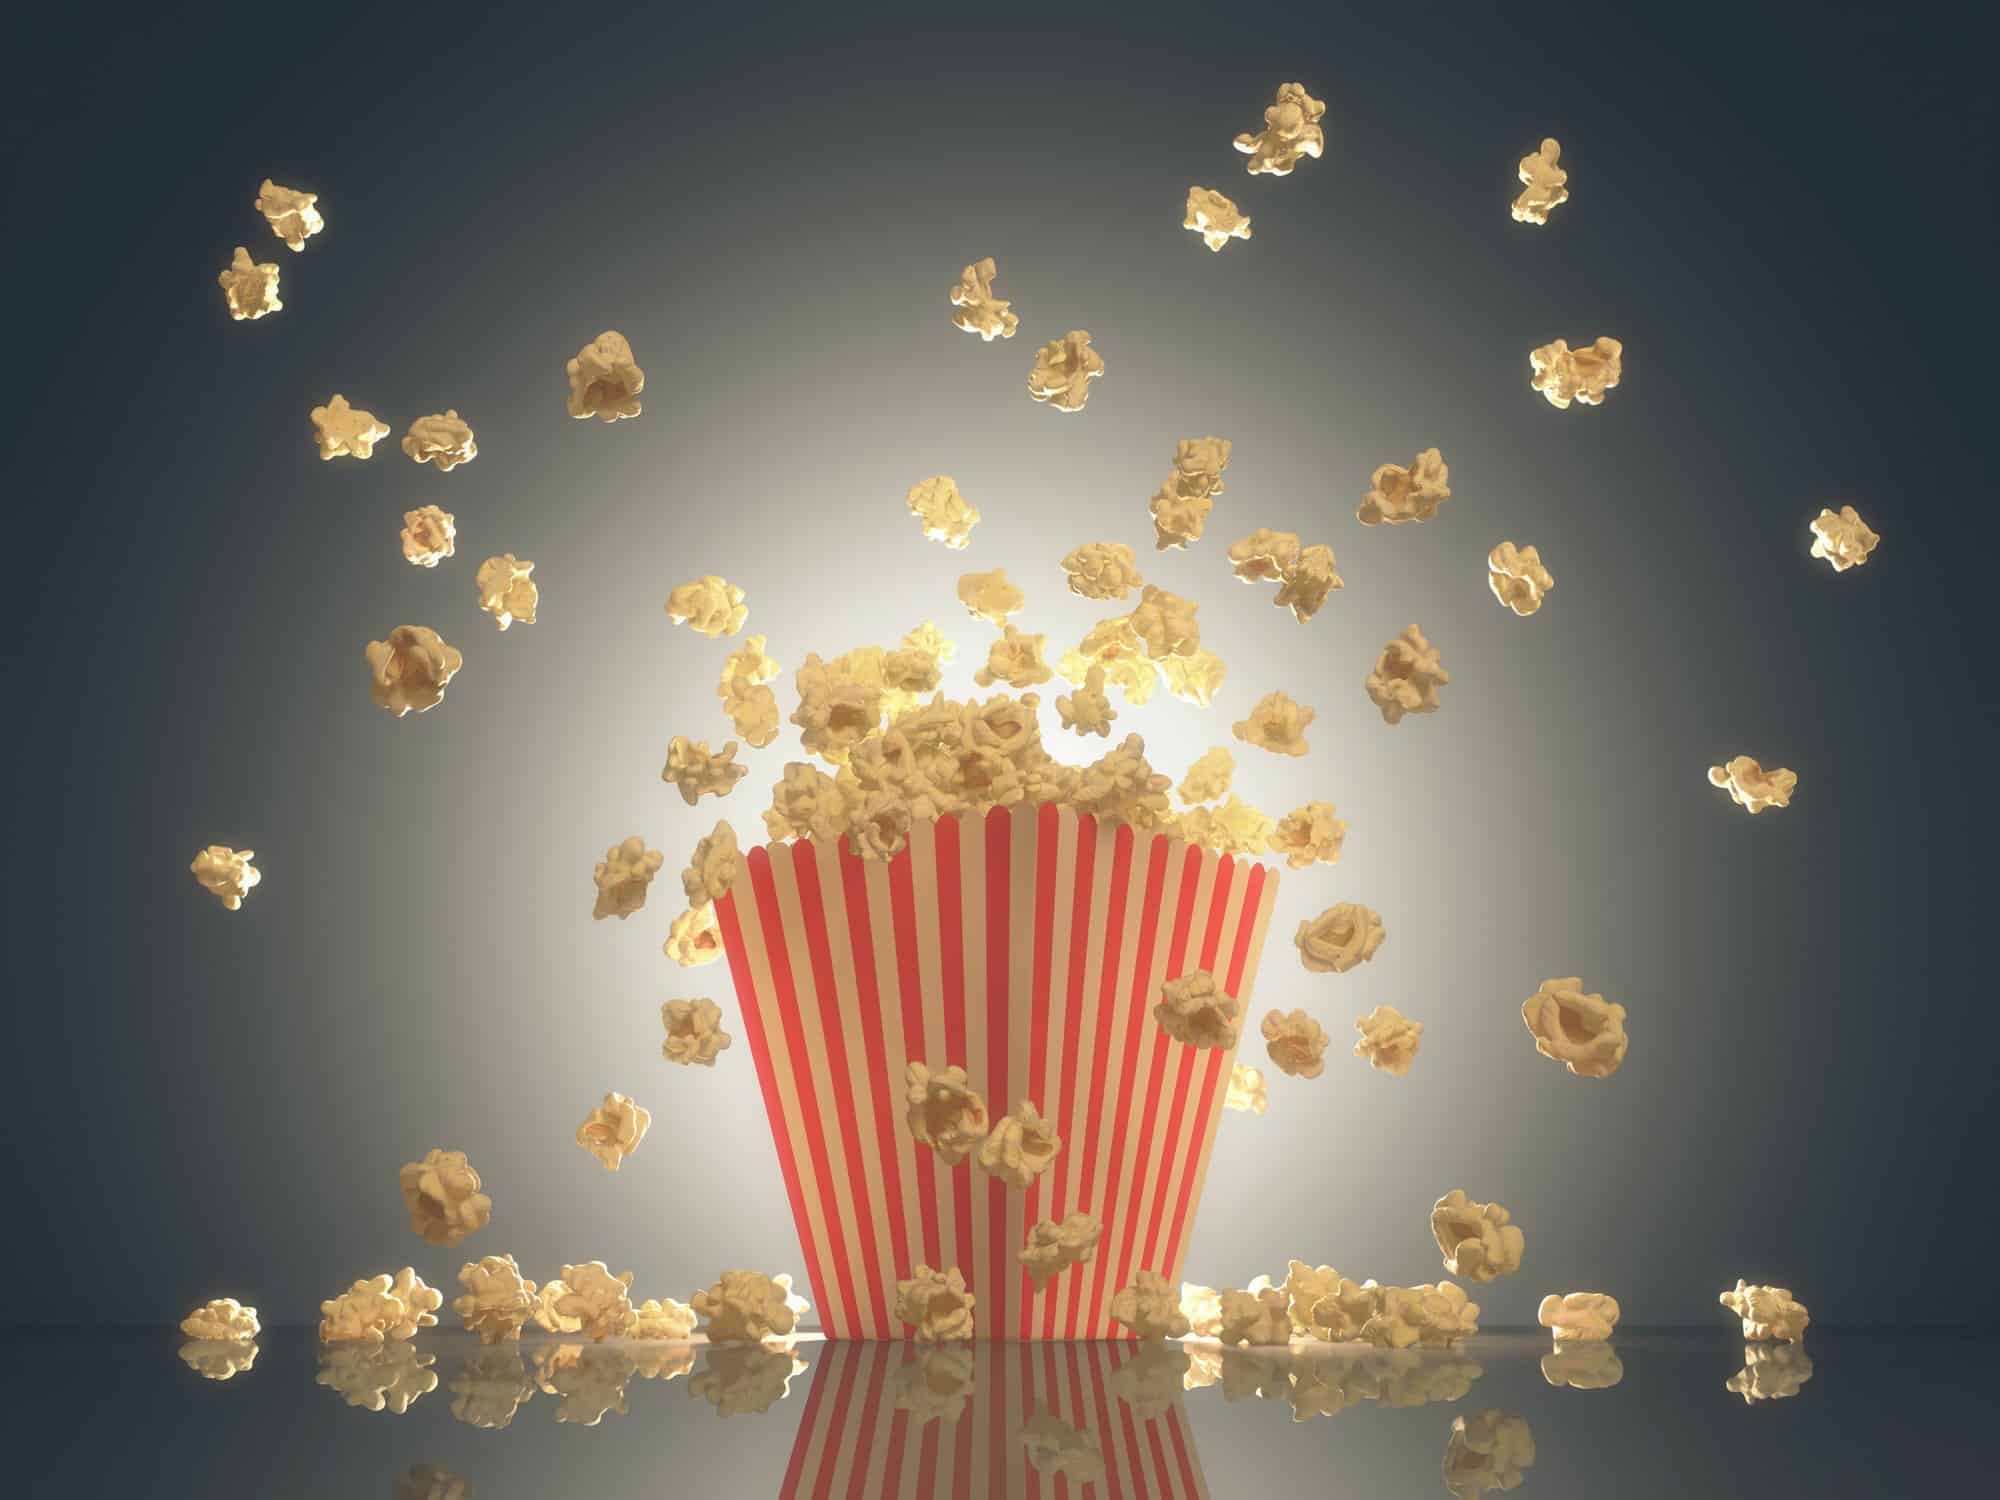 Popcorn à base de plantes : Est-ce Légal et Sécuritaire ?